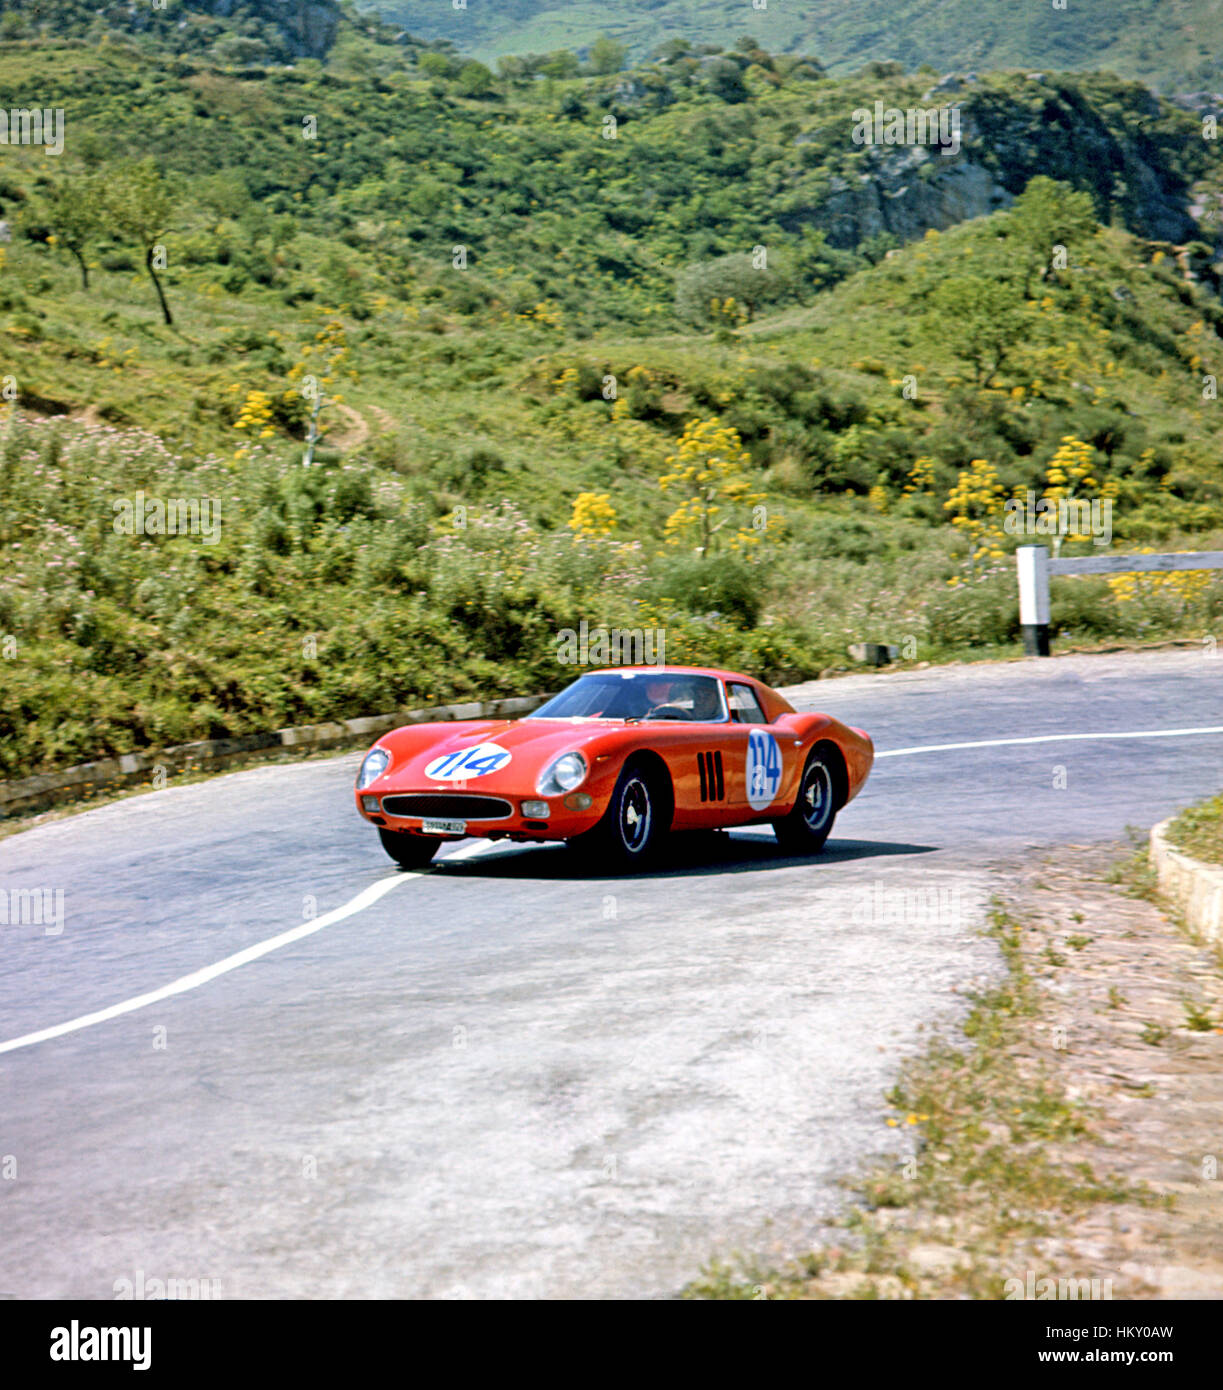 1964 Luigi Taramazzo italiana del Ferrari 250 GTO/64 Targa Florio quinto nella classifica generale 1GT-GG Foto Stock